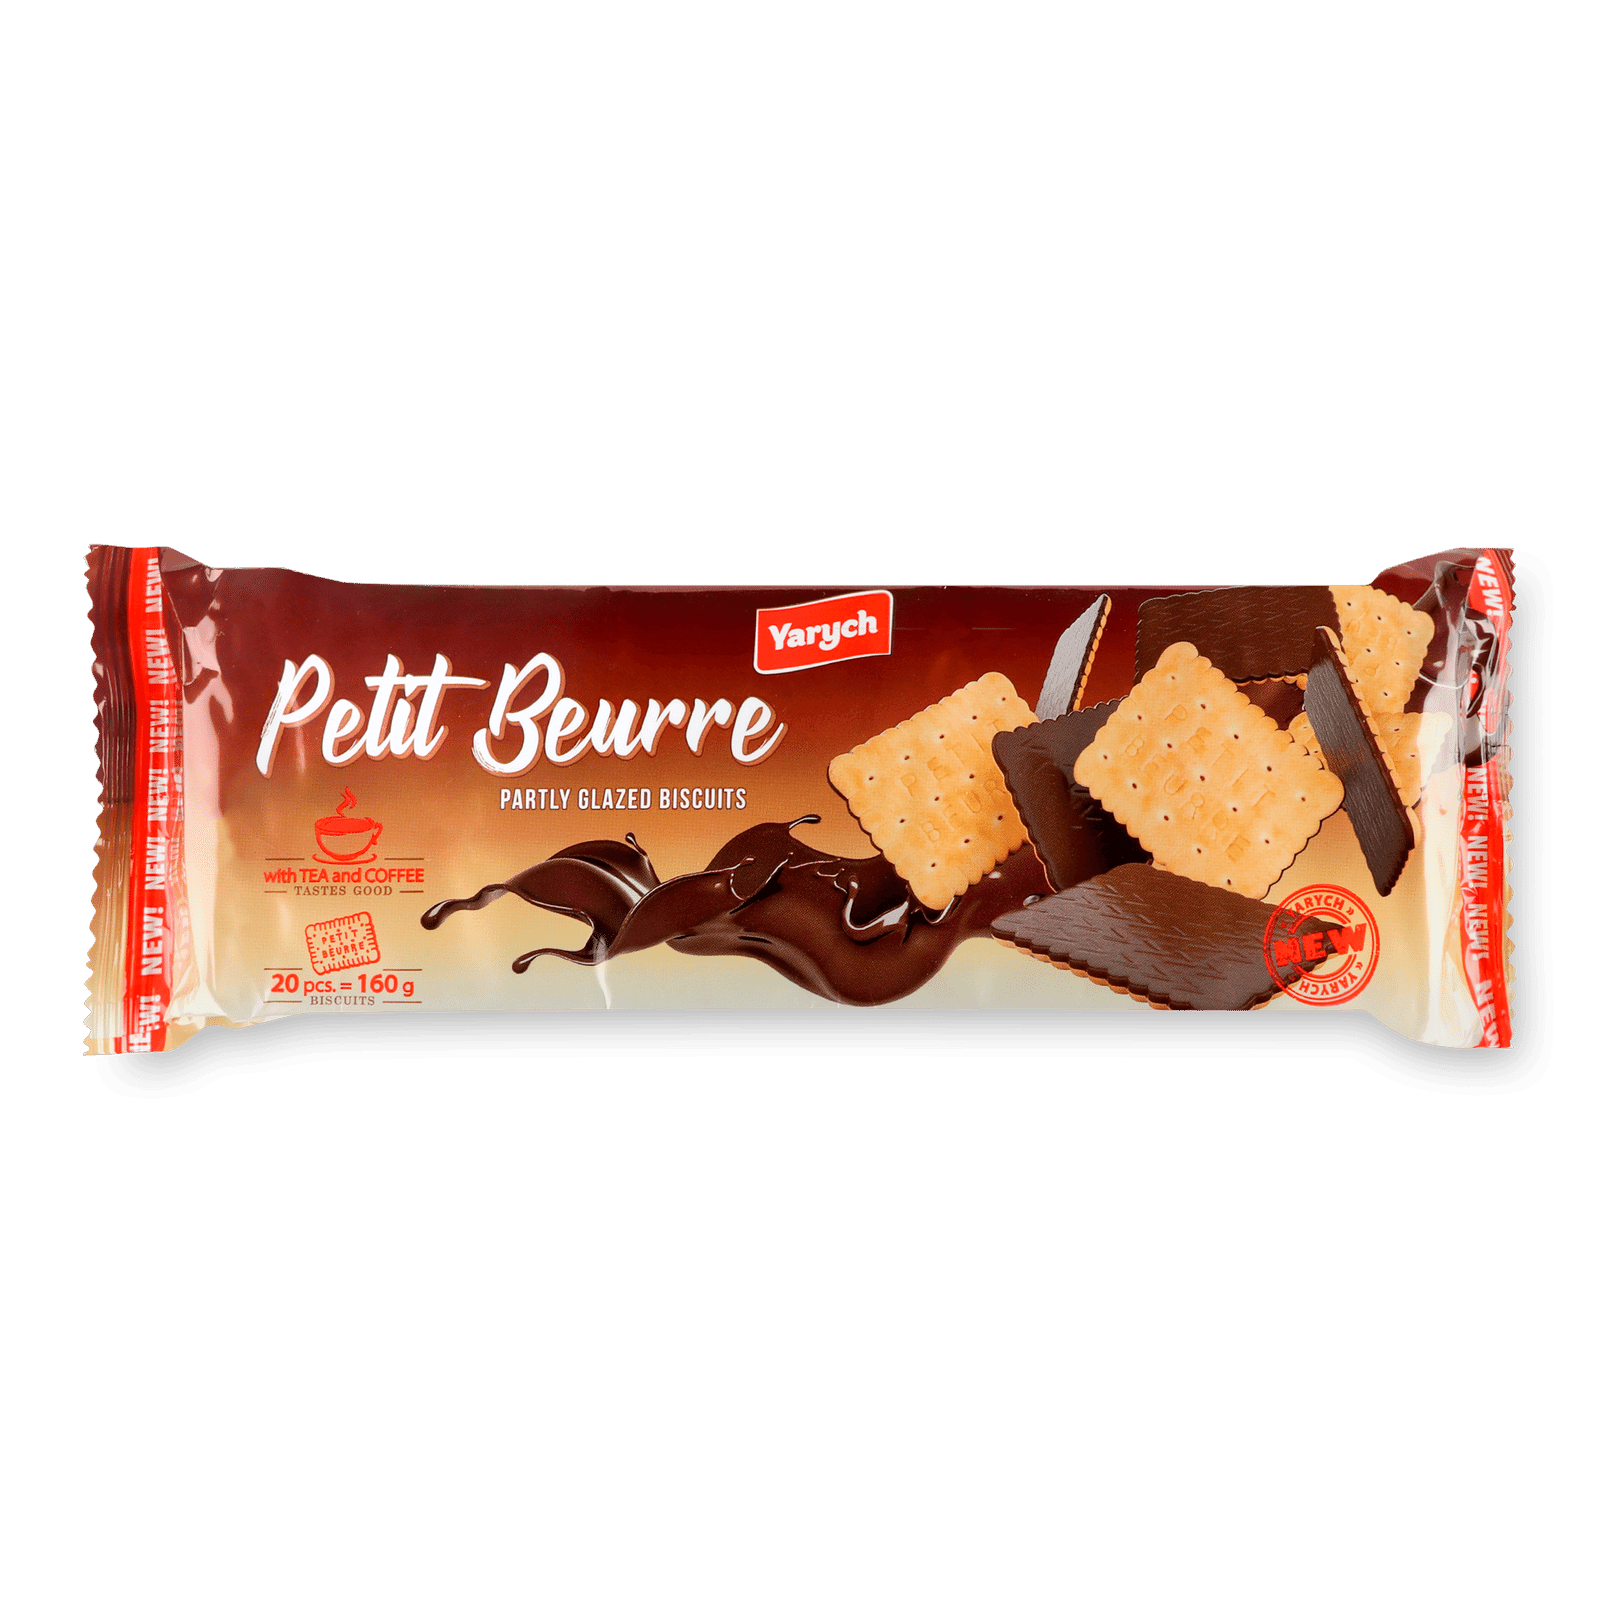 Печиво Yarych Petit Beurre частково глазуроване - 1